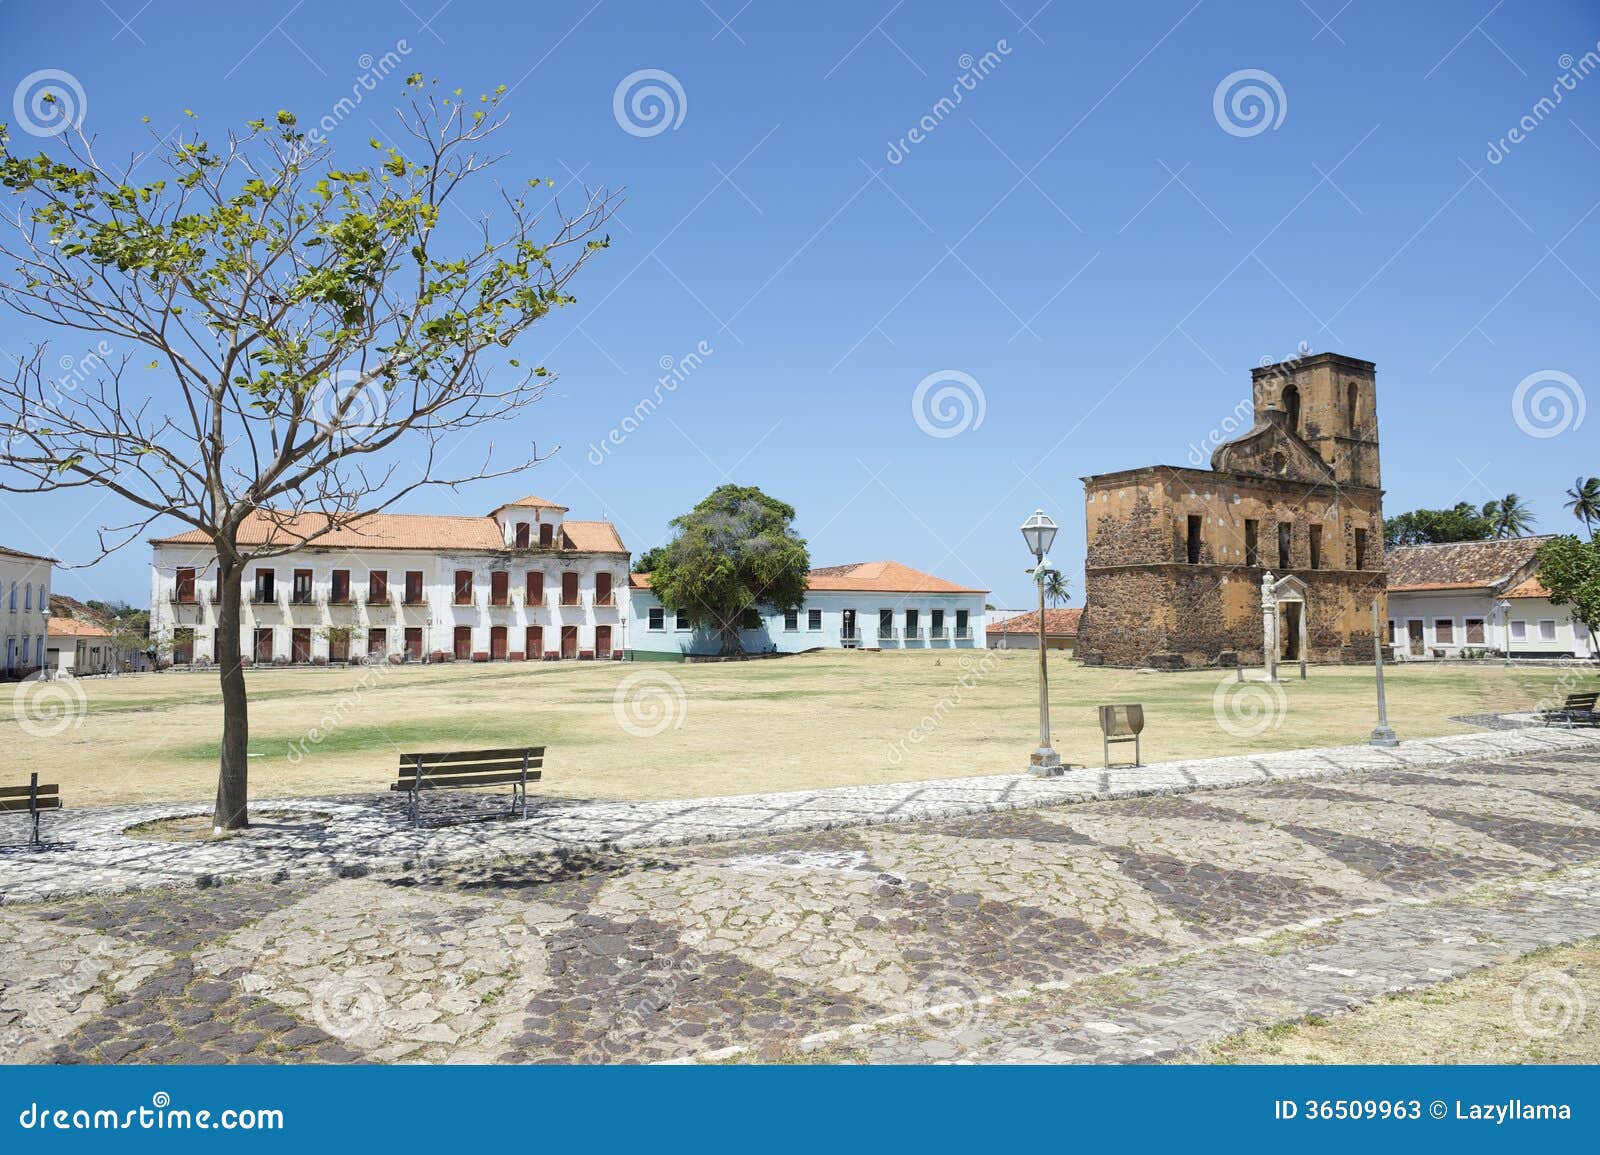 matriz plaza and sao matias church in alcantara brazil